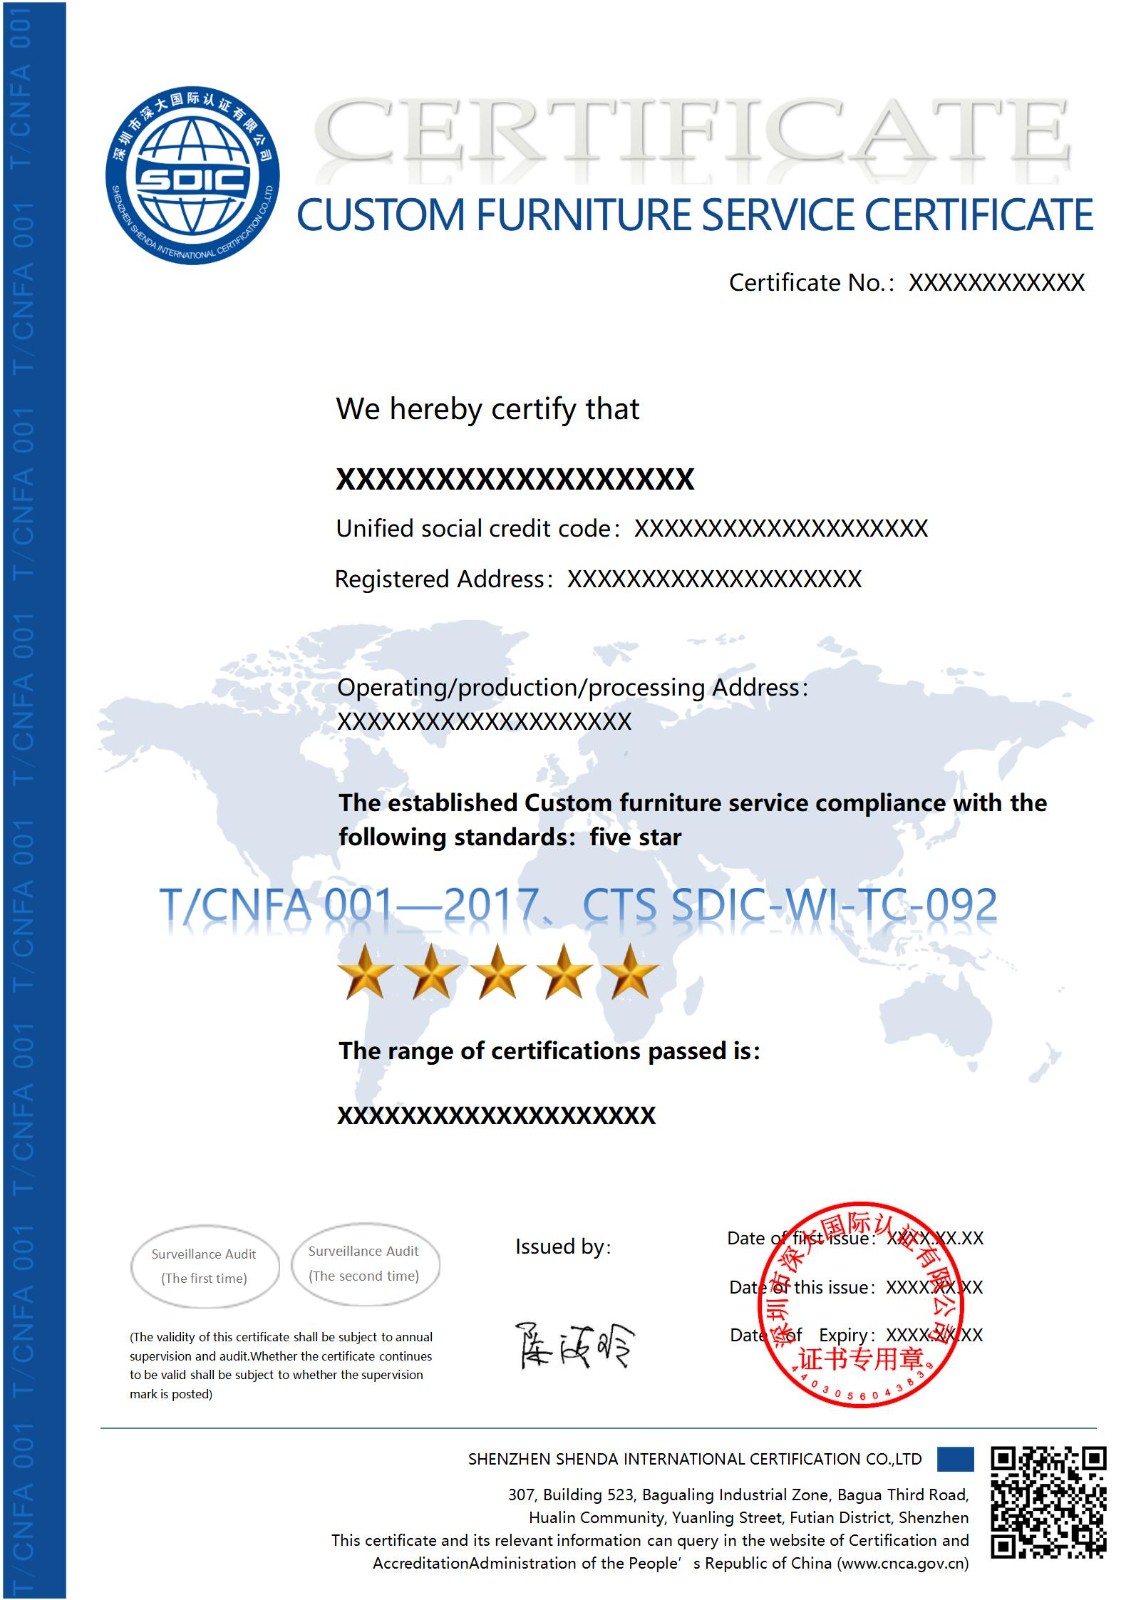 T/CNFA 001 定制家具服务认证证书-英文版